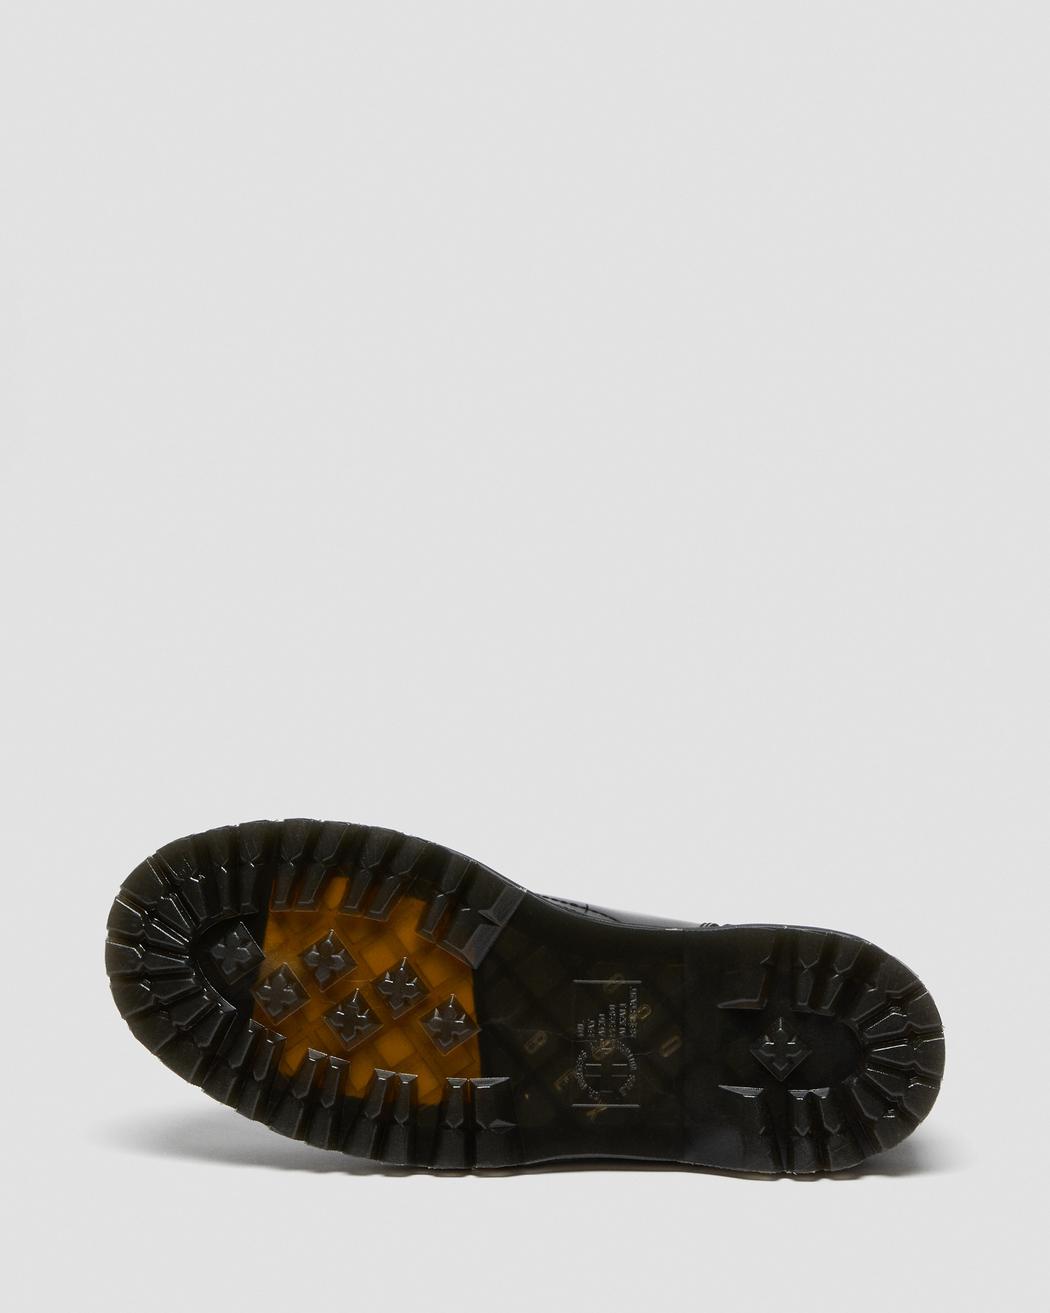 Jadon Black Smooth Leather Platform Boots DM15265001 - 8